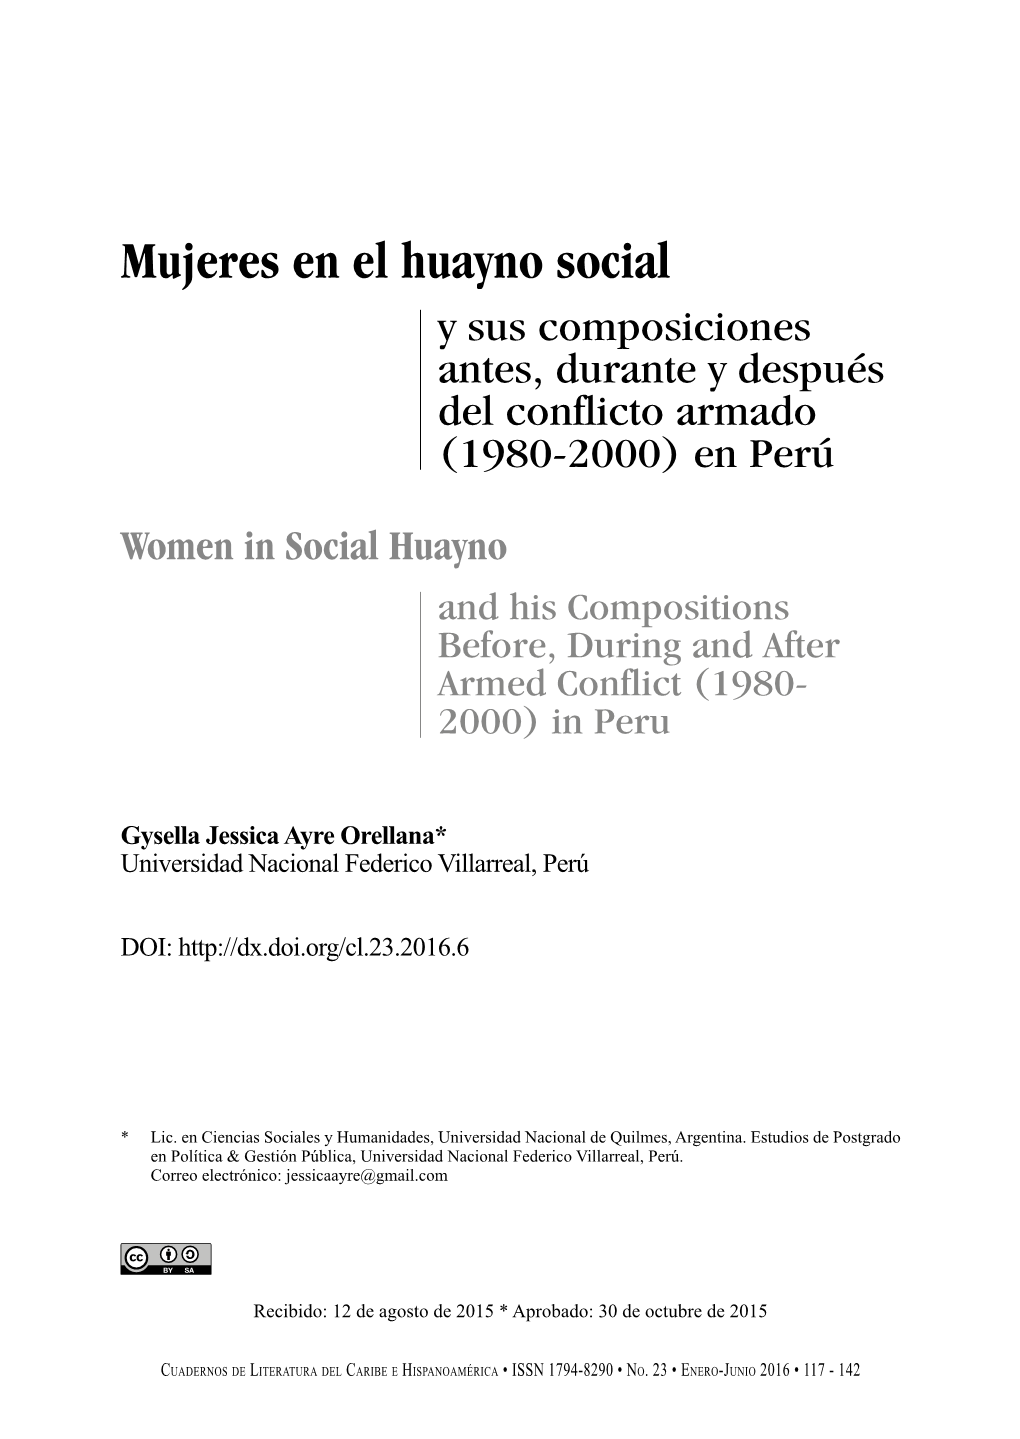 Mujeres En El Huayno Social Y Sus Composiciones Antes, Durante Y Después Del Conflicto Armado (1980-2000) En Perú